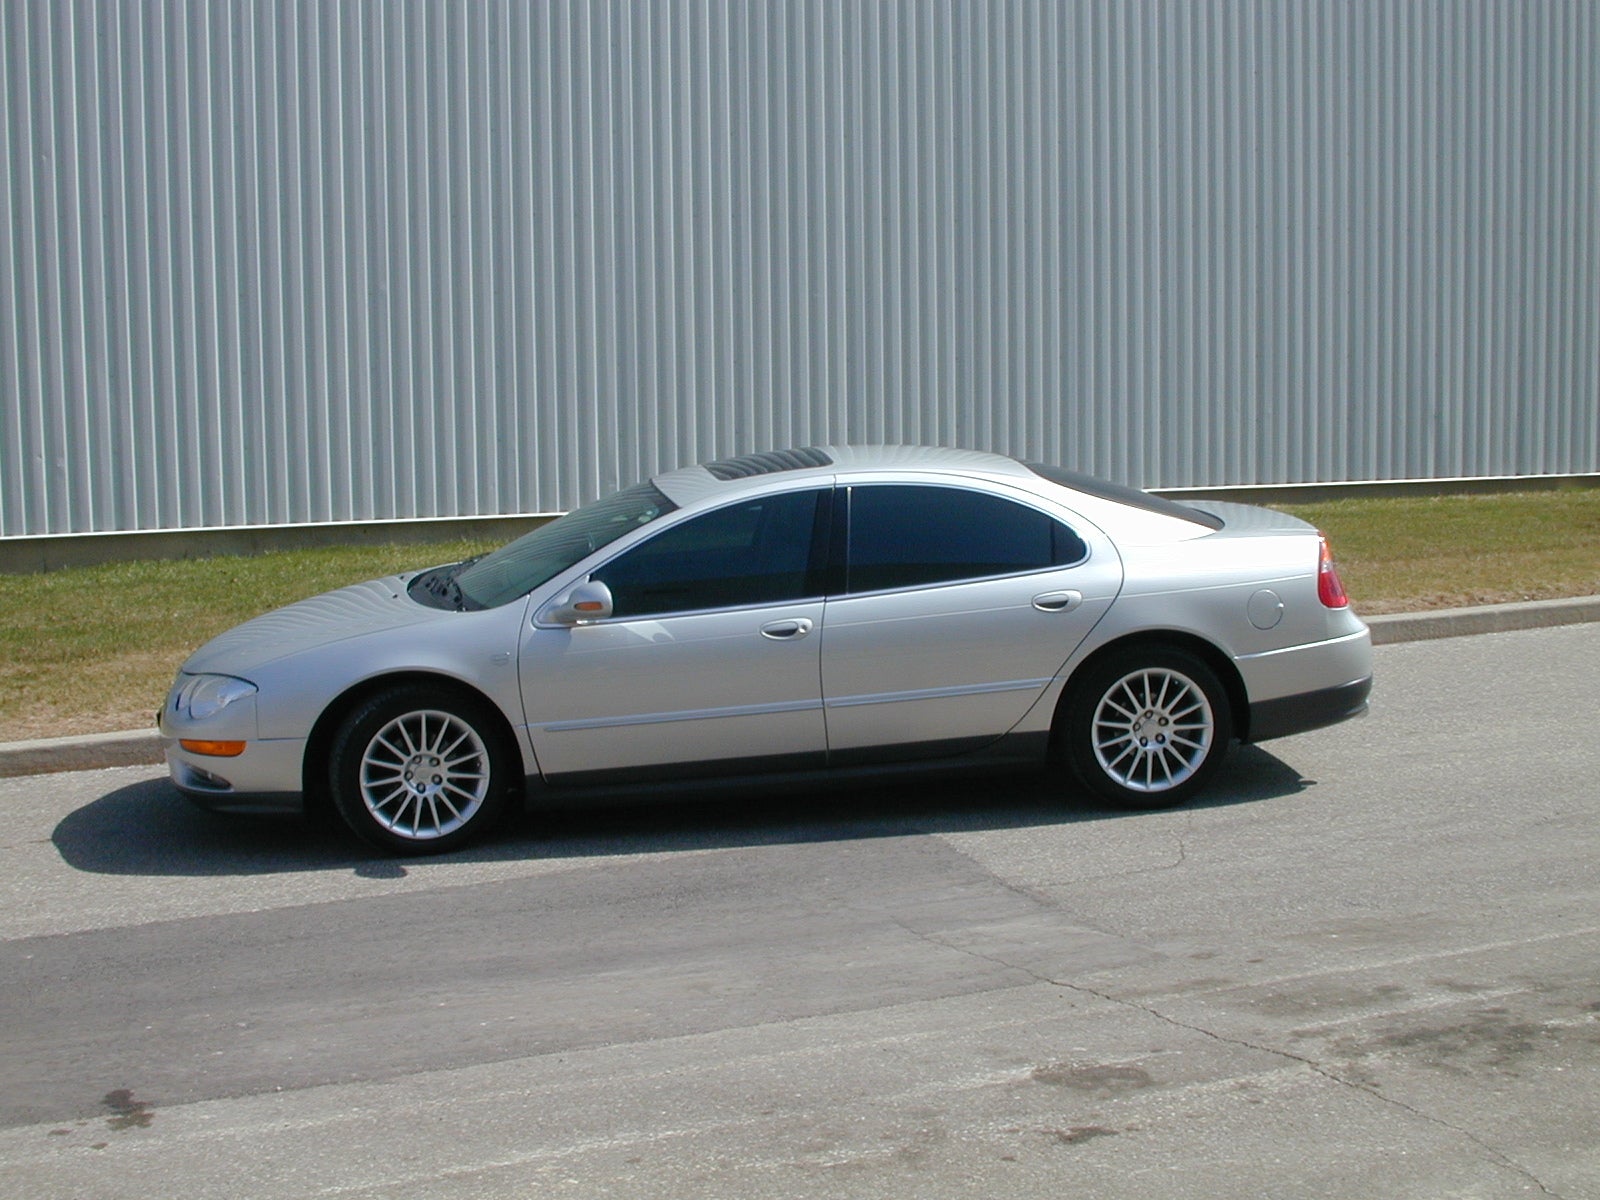 2002 Chrysler 300m special horsepower #5